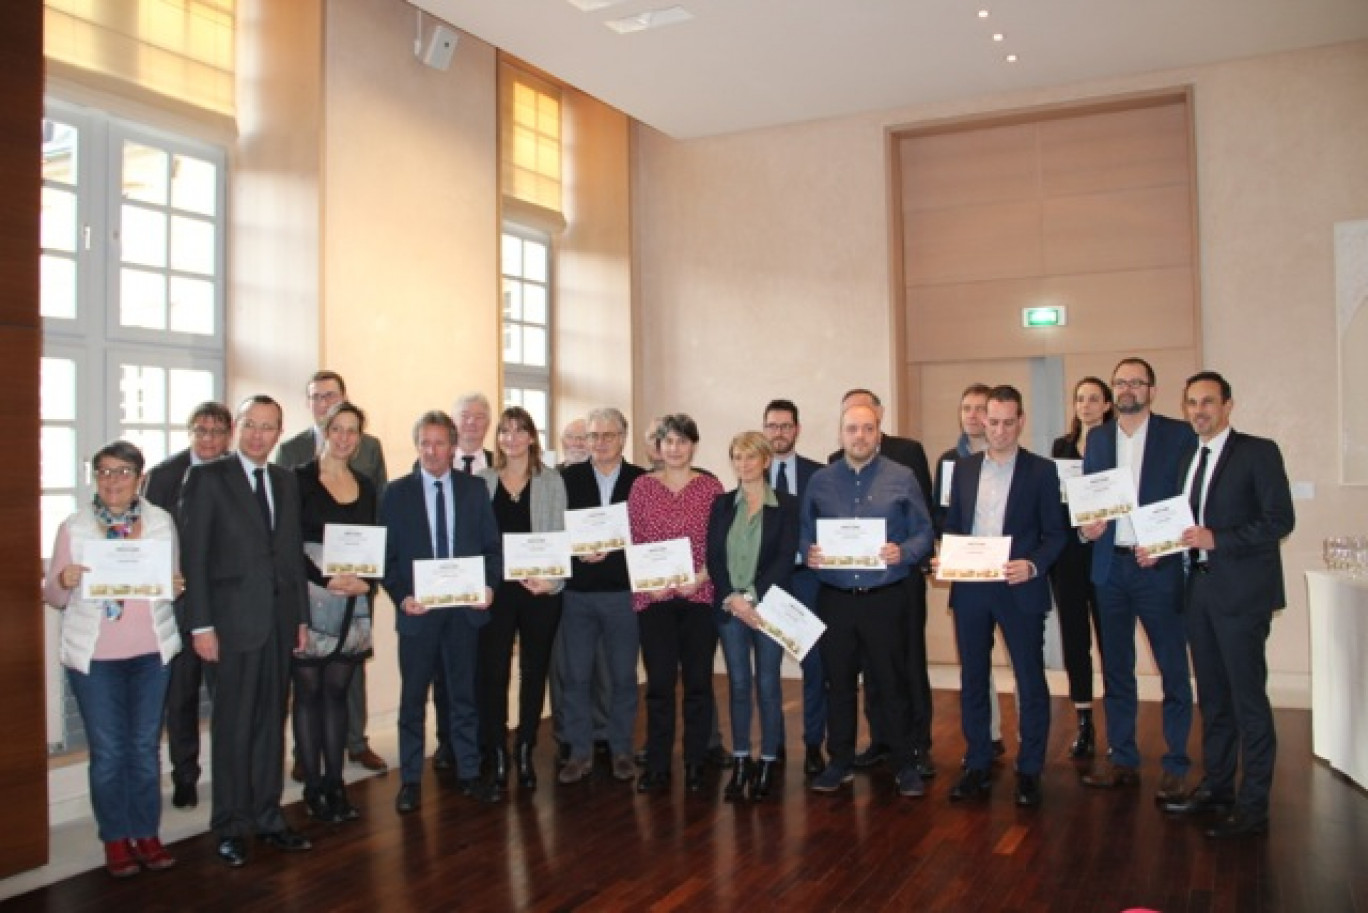 Crédit : LB Aletheia Press
; « Les lauréats de la deuxième édition de l'appel à projets Draccare ont reçu leur prix des mains du préfet de Seine-Maritime ».
